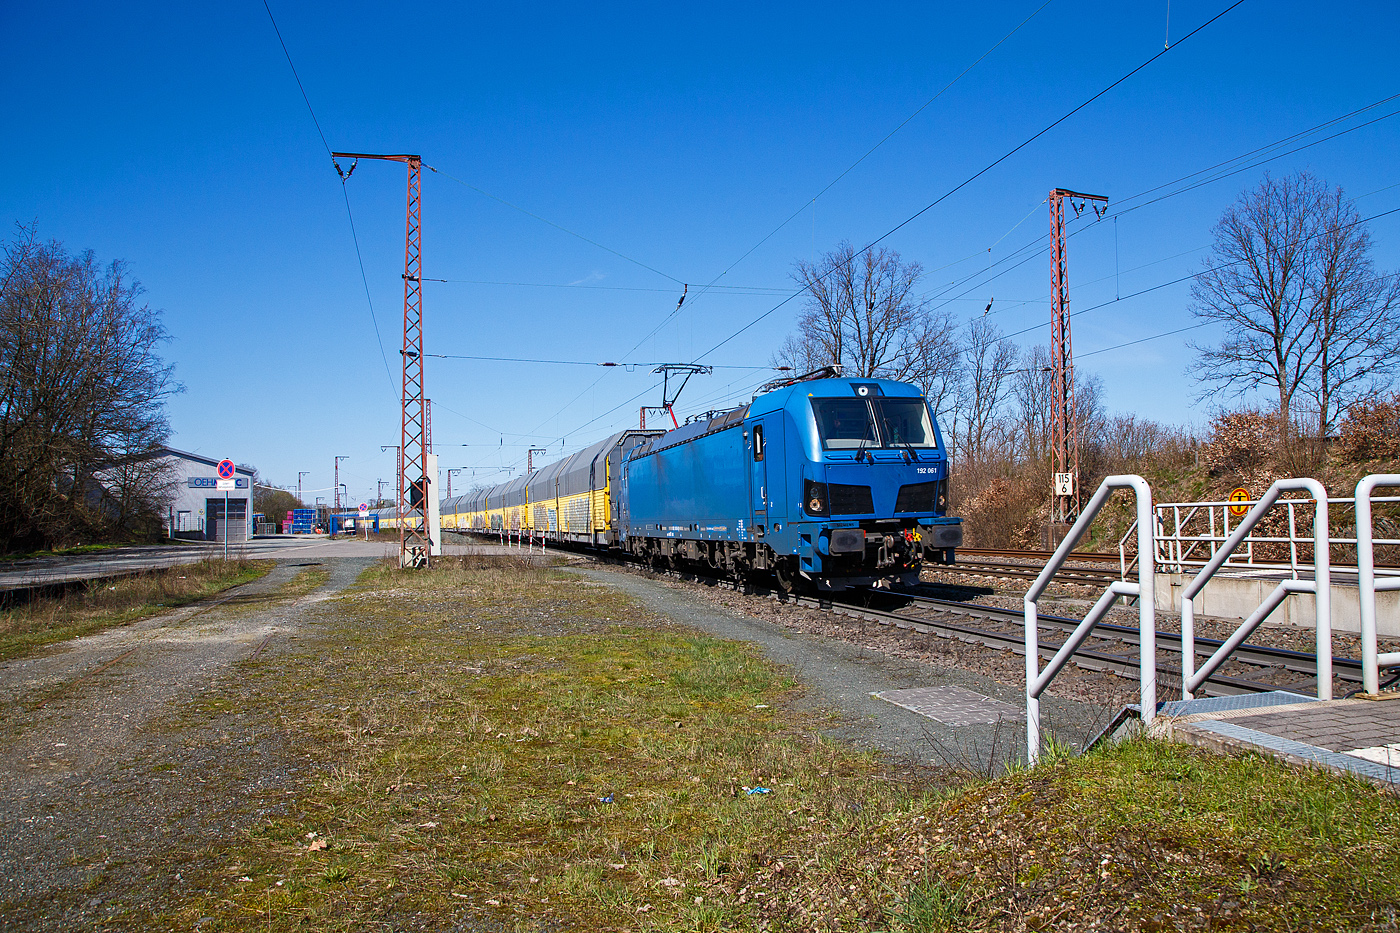 Die an die RTB Cargo (RATH Gruppe/Rurtalbahn) vermietete, SIEMENS Smartron 192 06-0 (91 80 6192 061-0 D-NRAIL) der RRL - RIVE Rail Leasing Limited (Dublin), eingestellt über die northrail GmbH (Hamburg) fährt am 04.04.2023 mit einem langen geschlossen Doppelstock- Autotransportzug der ARS Altmann AG (Wagen der Gattung Hccrrs), durch Rudersdorf (Kr. Siegen) in Richtung Süden.

Nochmals einen lieben Gruß an den netten Lokführer zurück.

Der SIEMENS Smartron wurde 2022 von Siemens Mobilitiy in München-Allach unter der Fabriknummer 22959 gebaut.